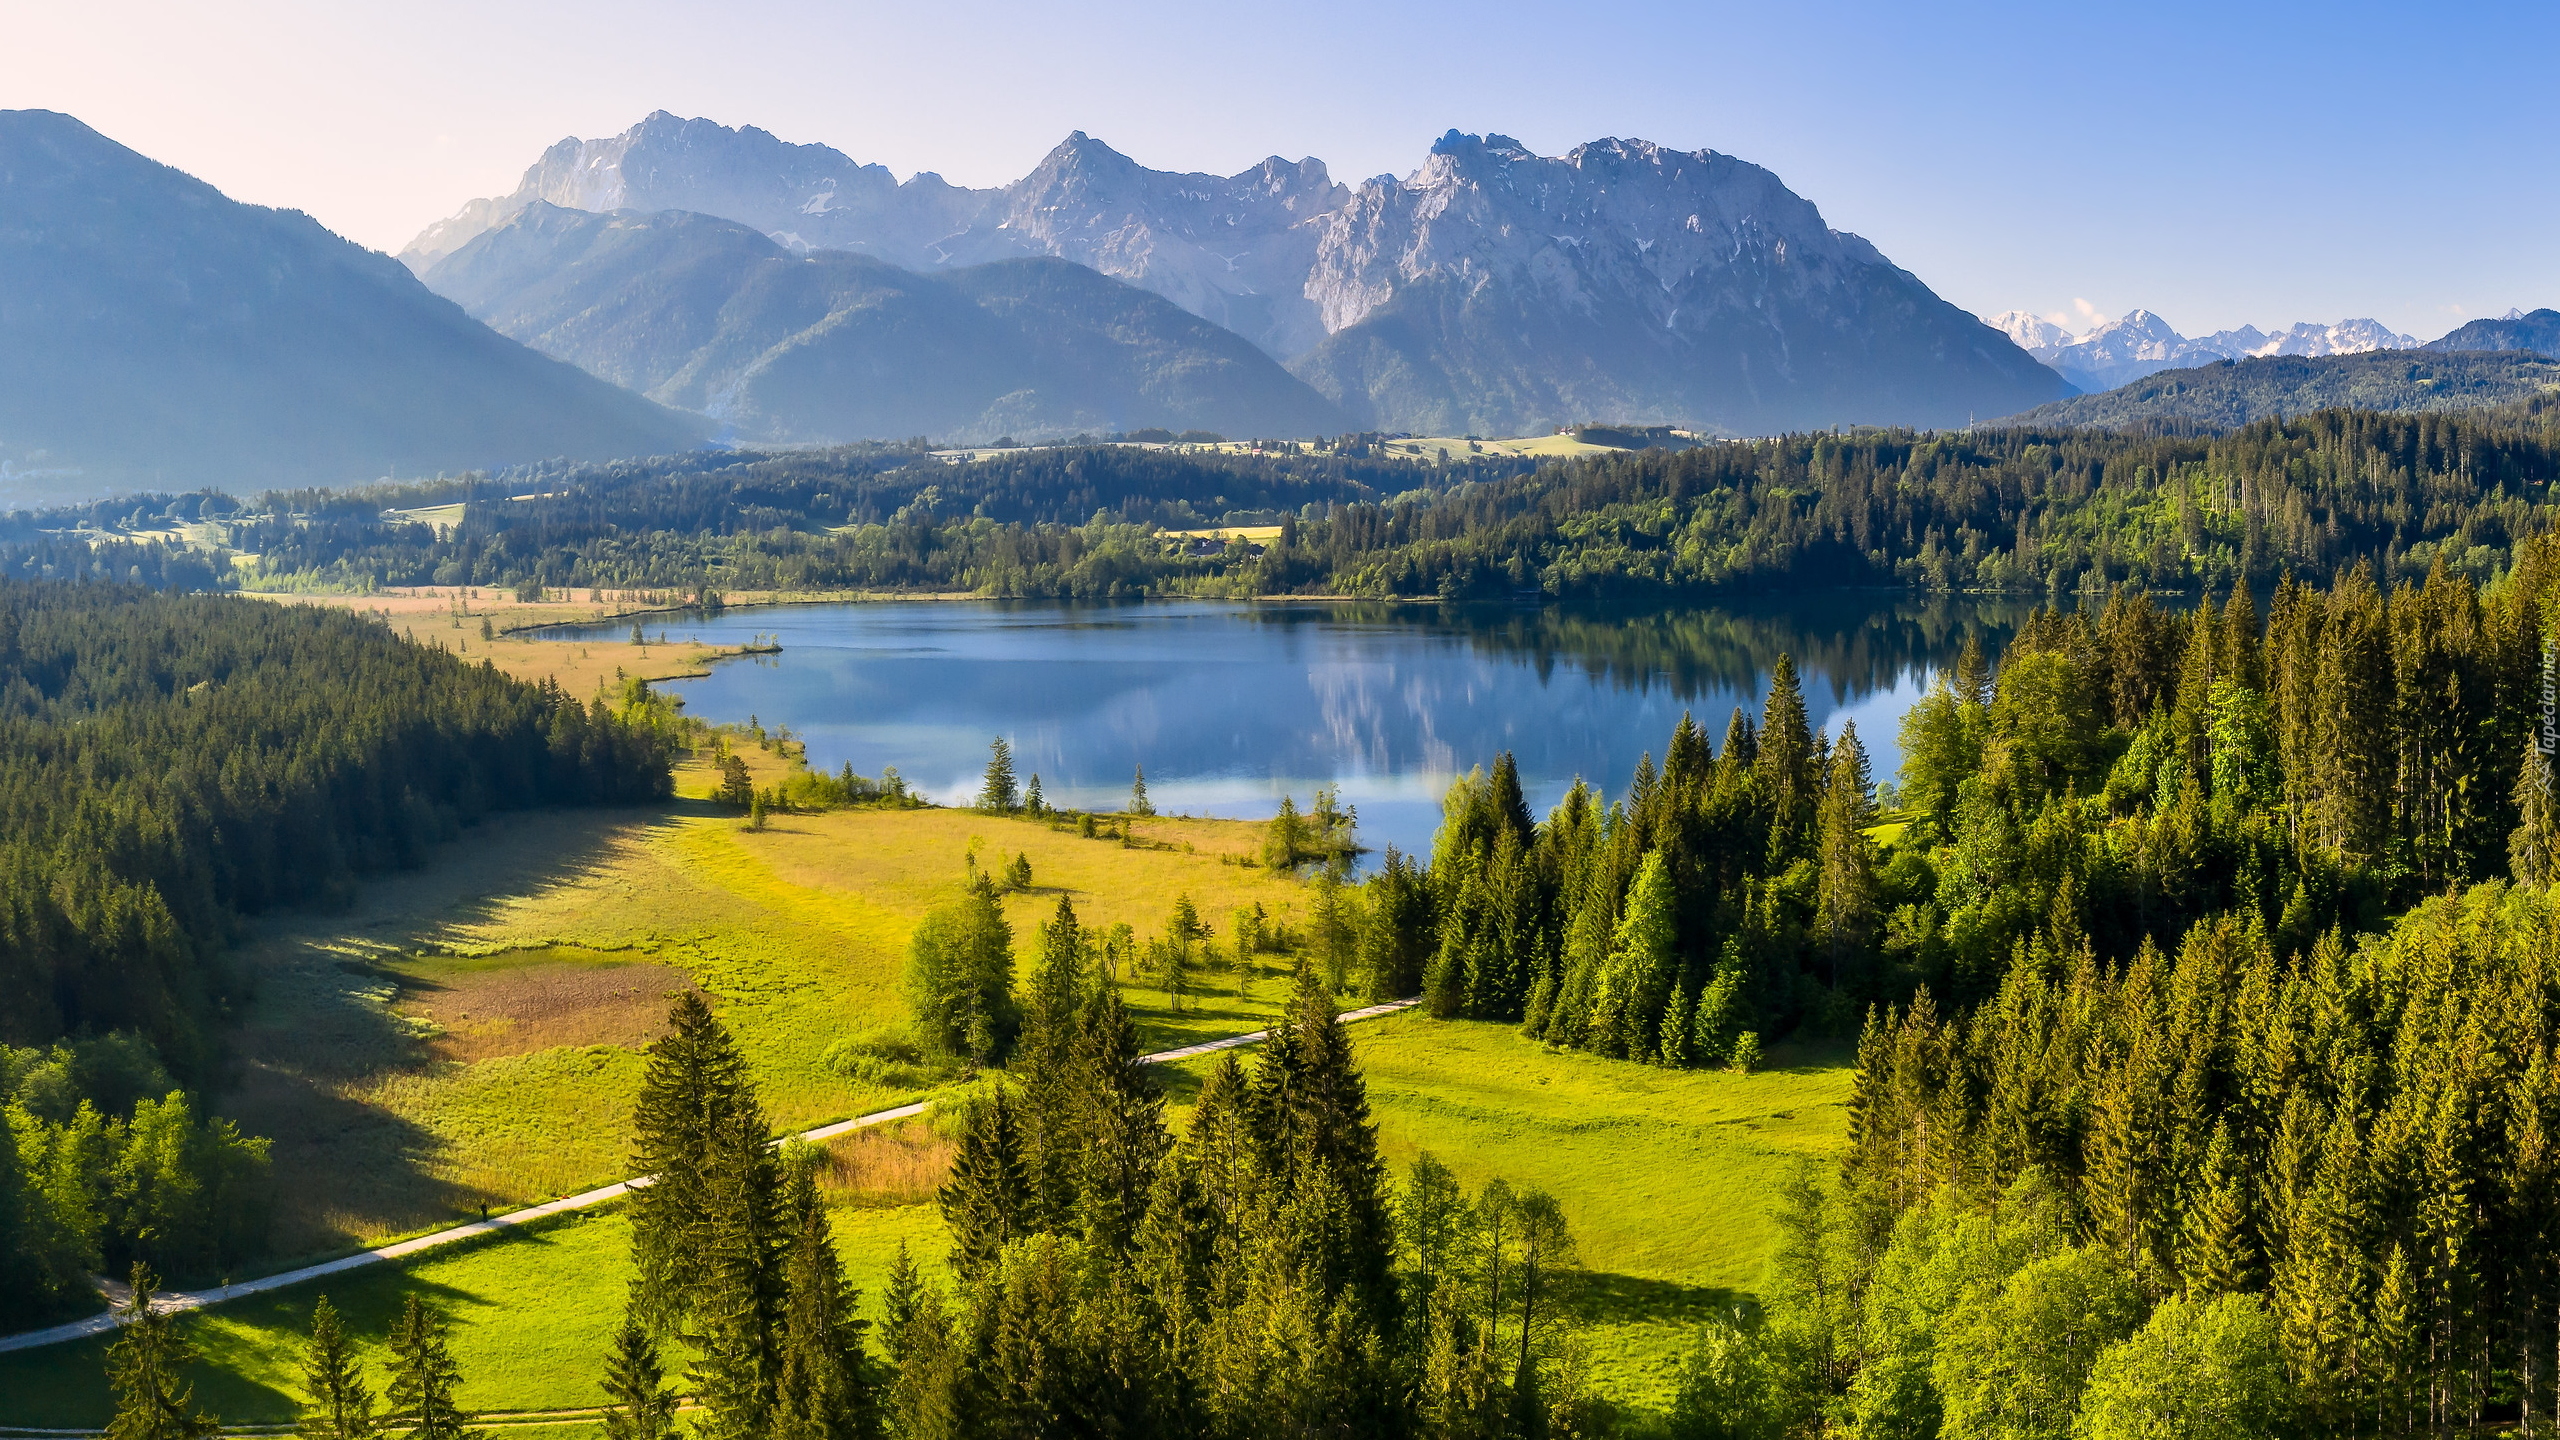 Jezioro Eibsee, Góry, Karwendel, Drzewa, Lasy, Bawaria, Niemcy